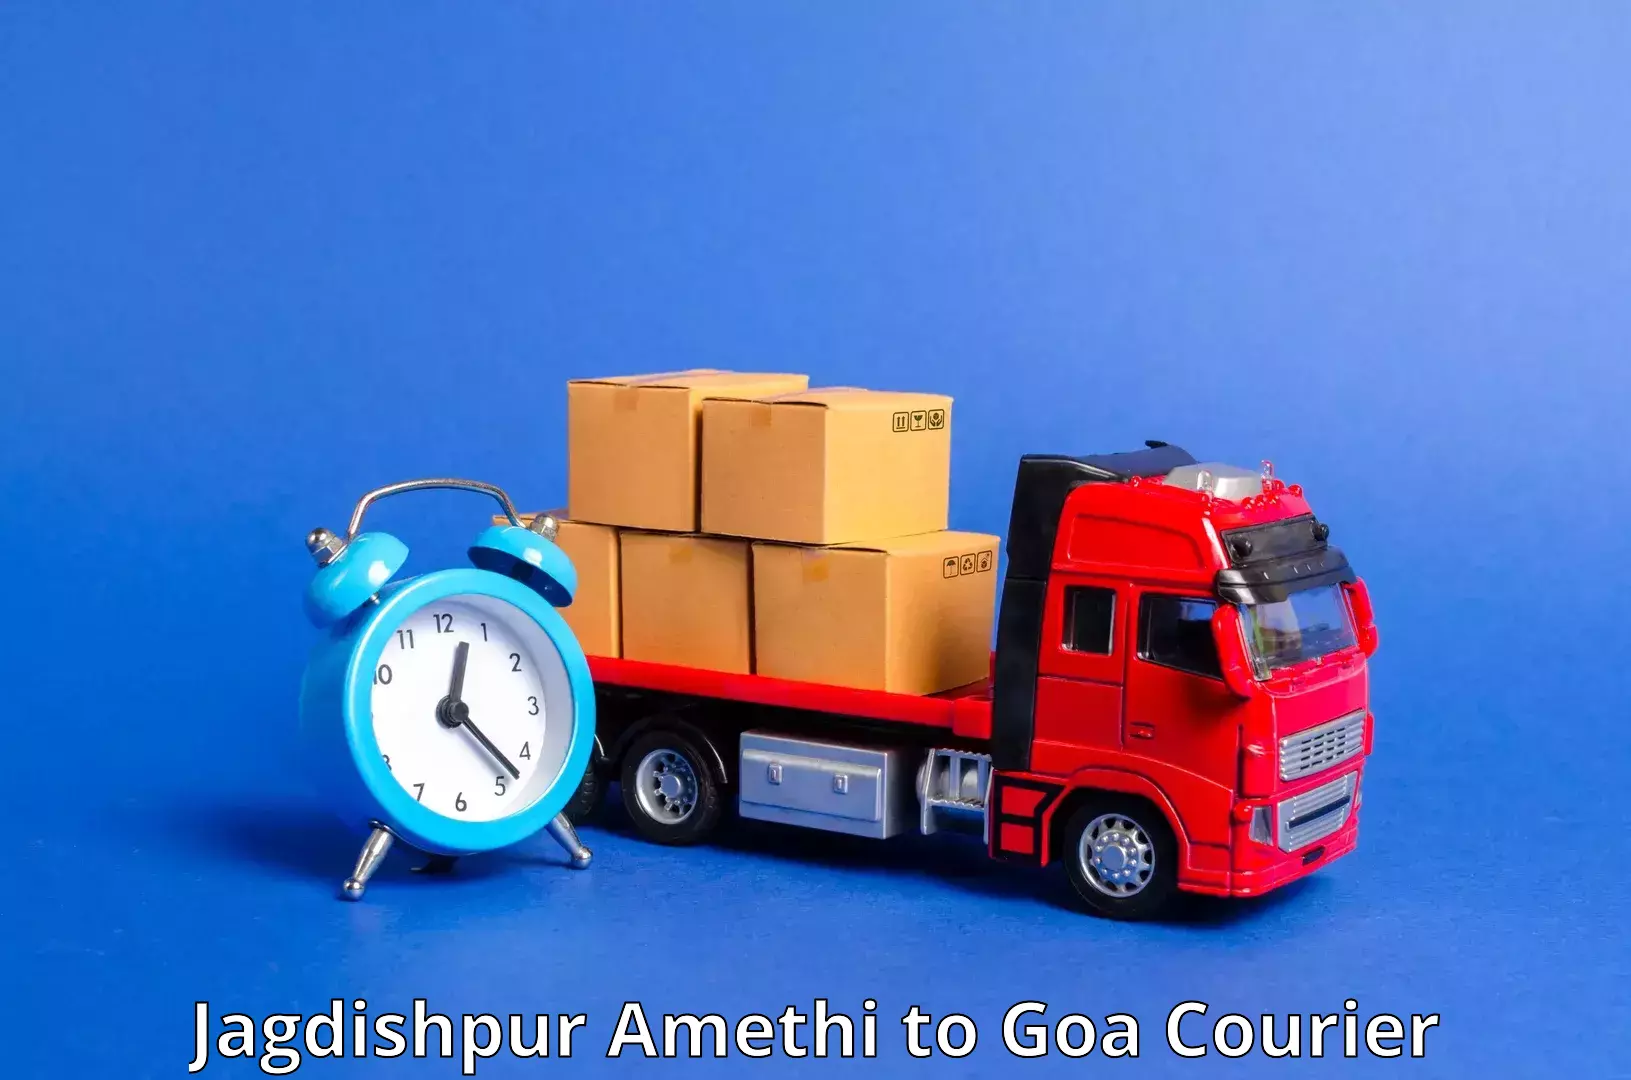 High-capacity parcel service Jagdishpur Amethi to Bicholim